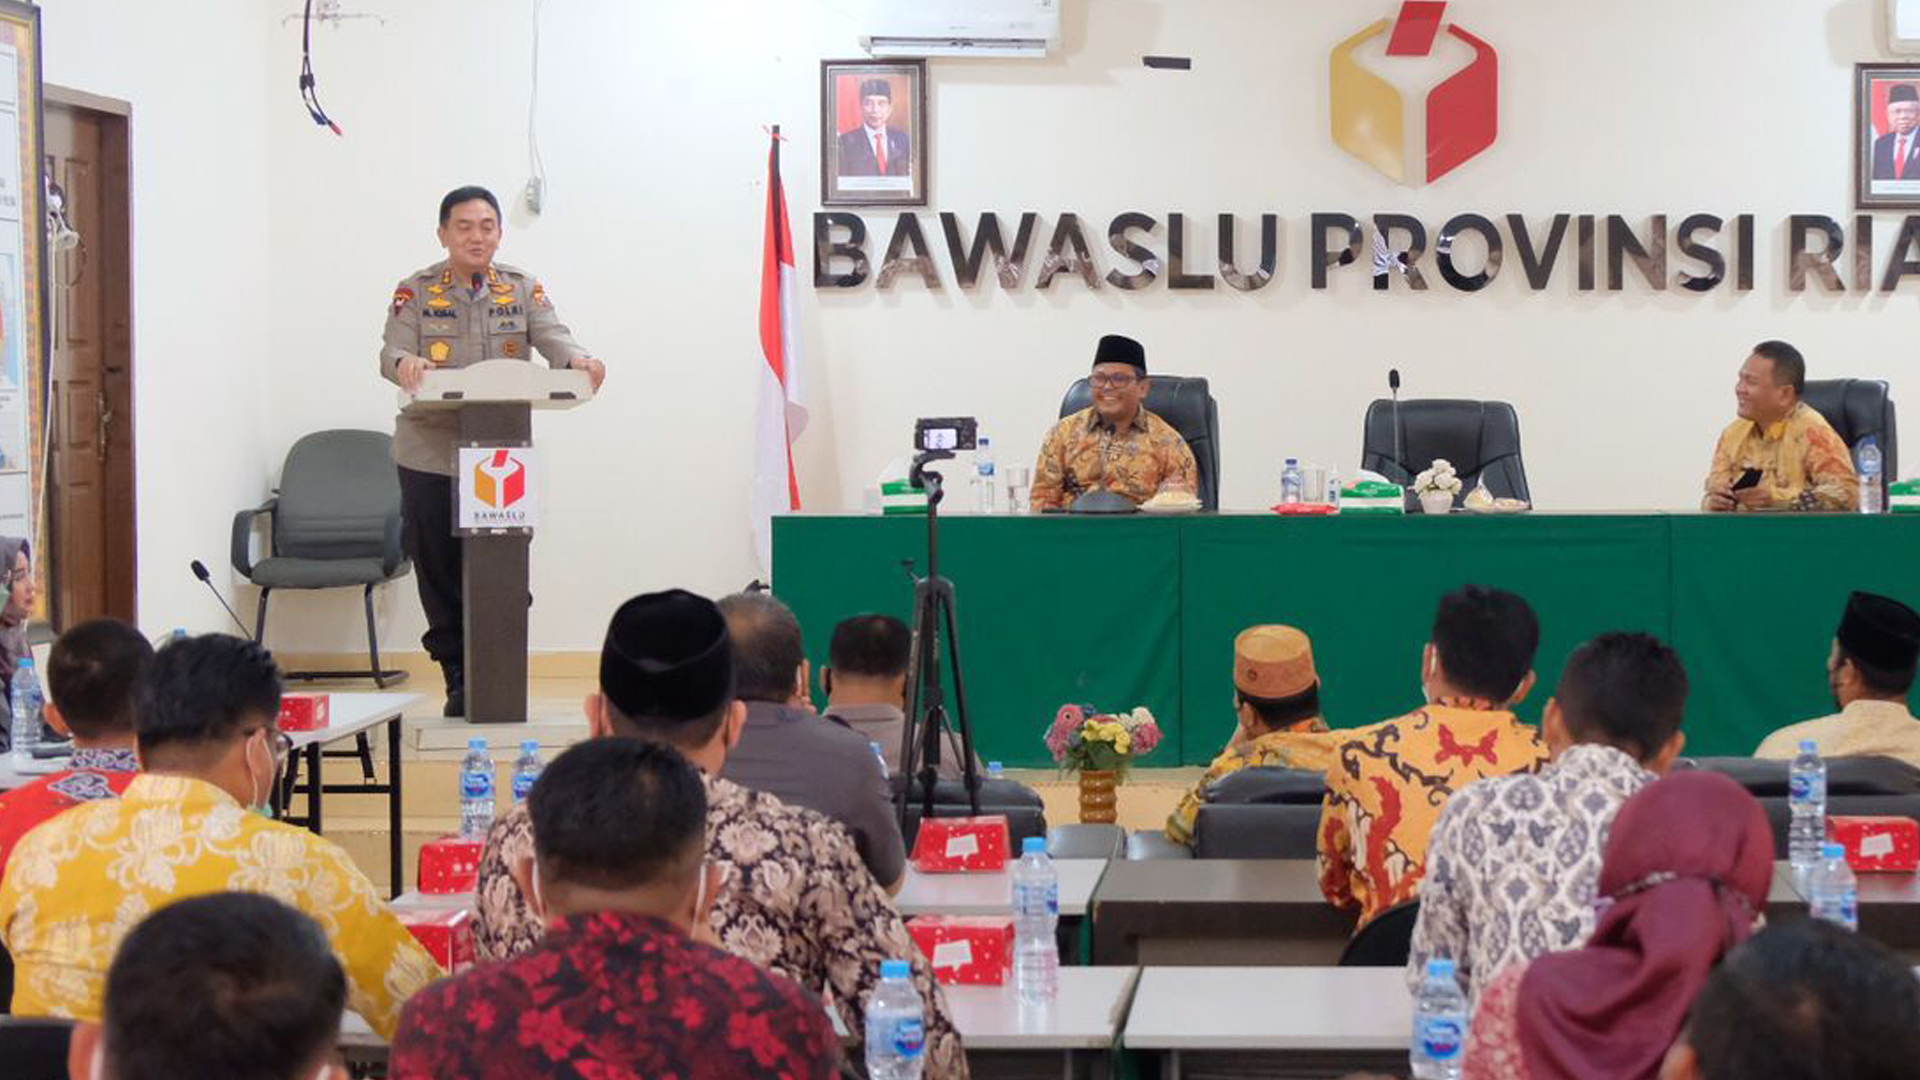 Berkunjung ke Bawaslu, Kapolda Riau: Kita Harus Bermanfaat Bagi Masyarakat